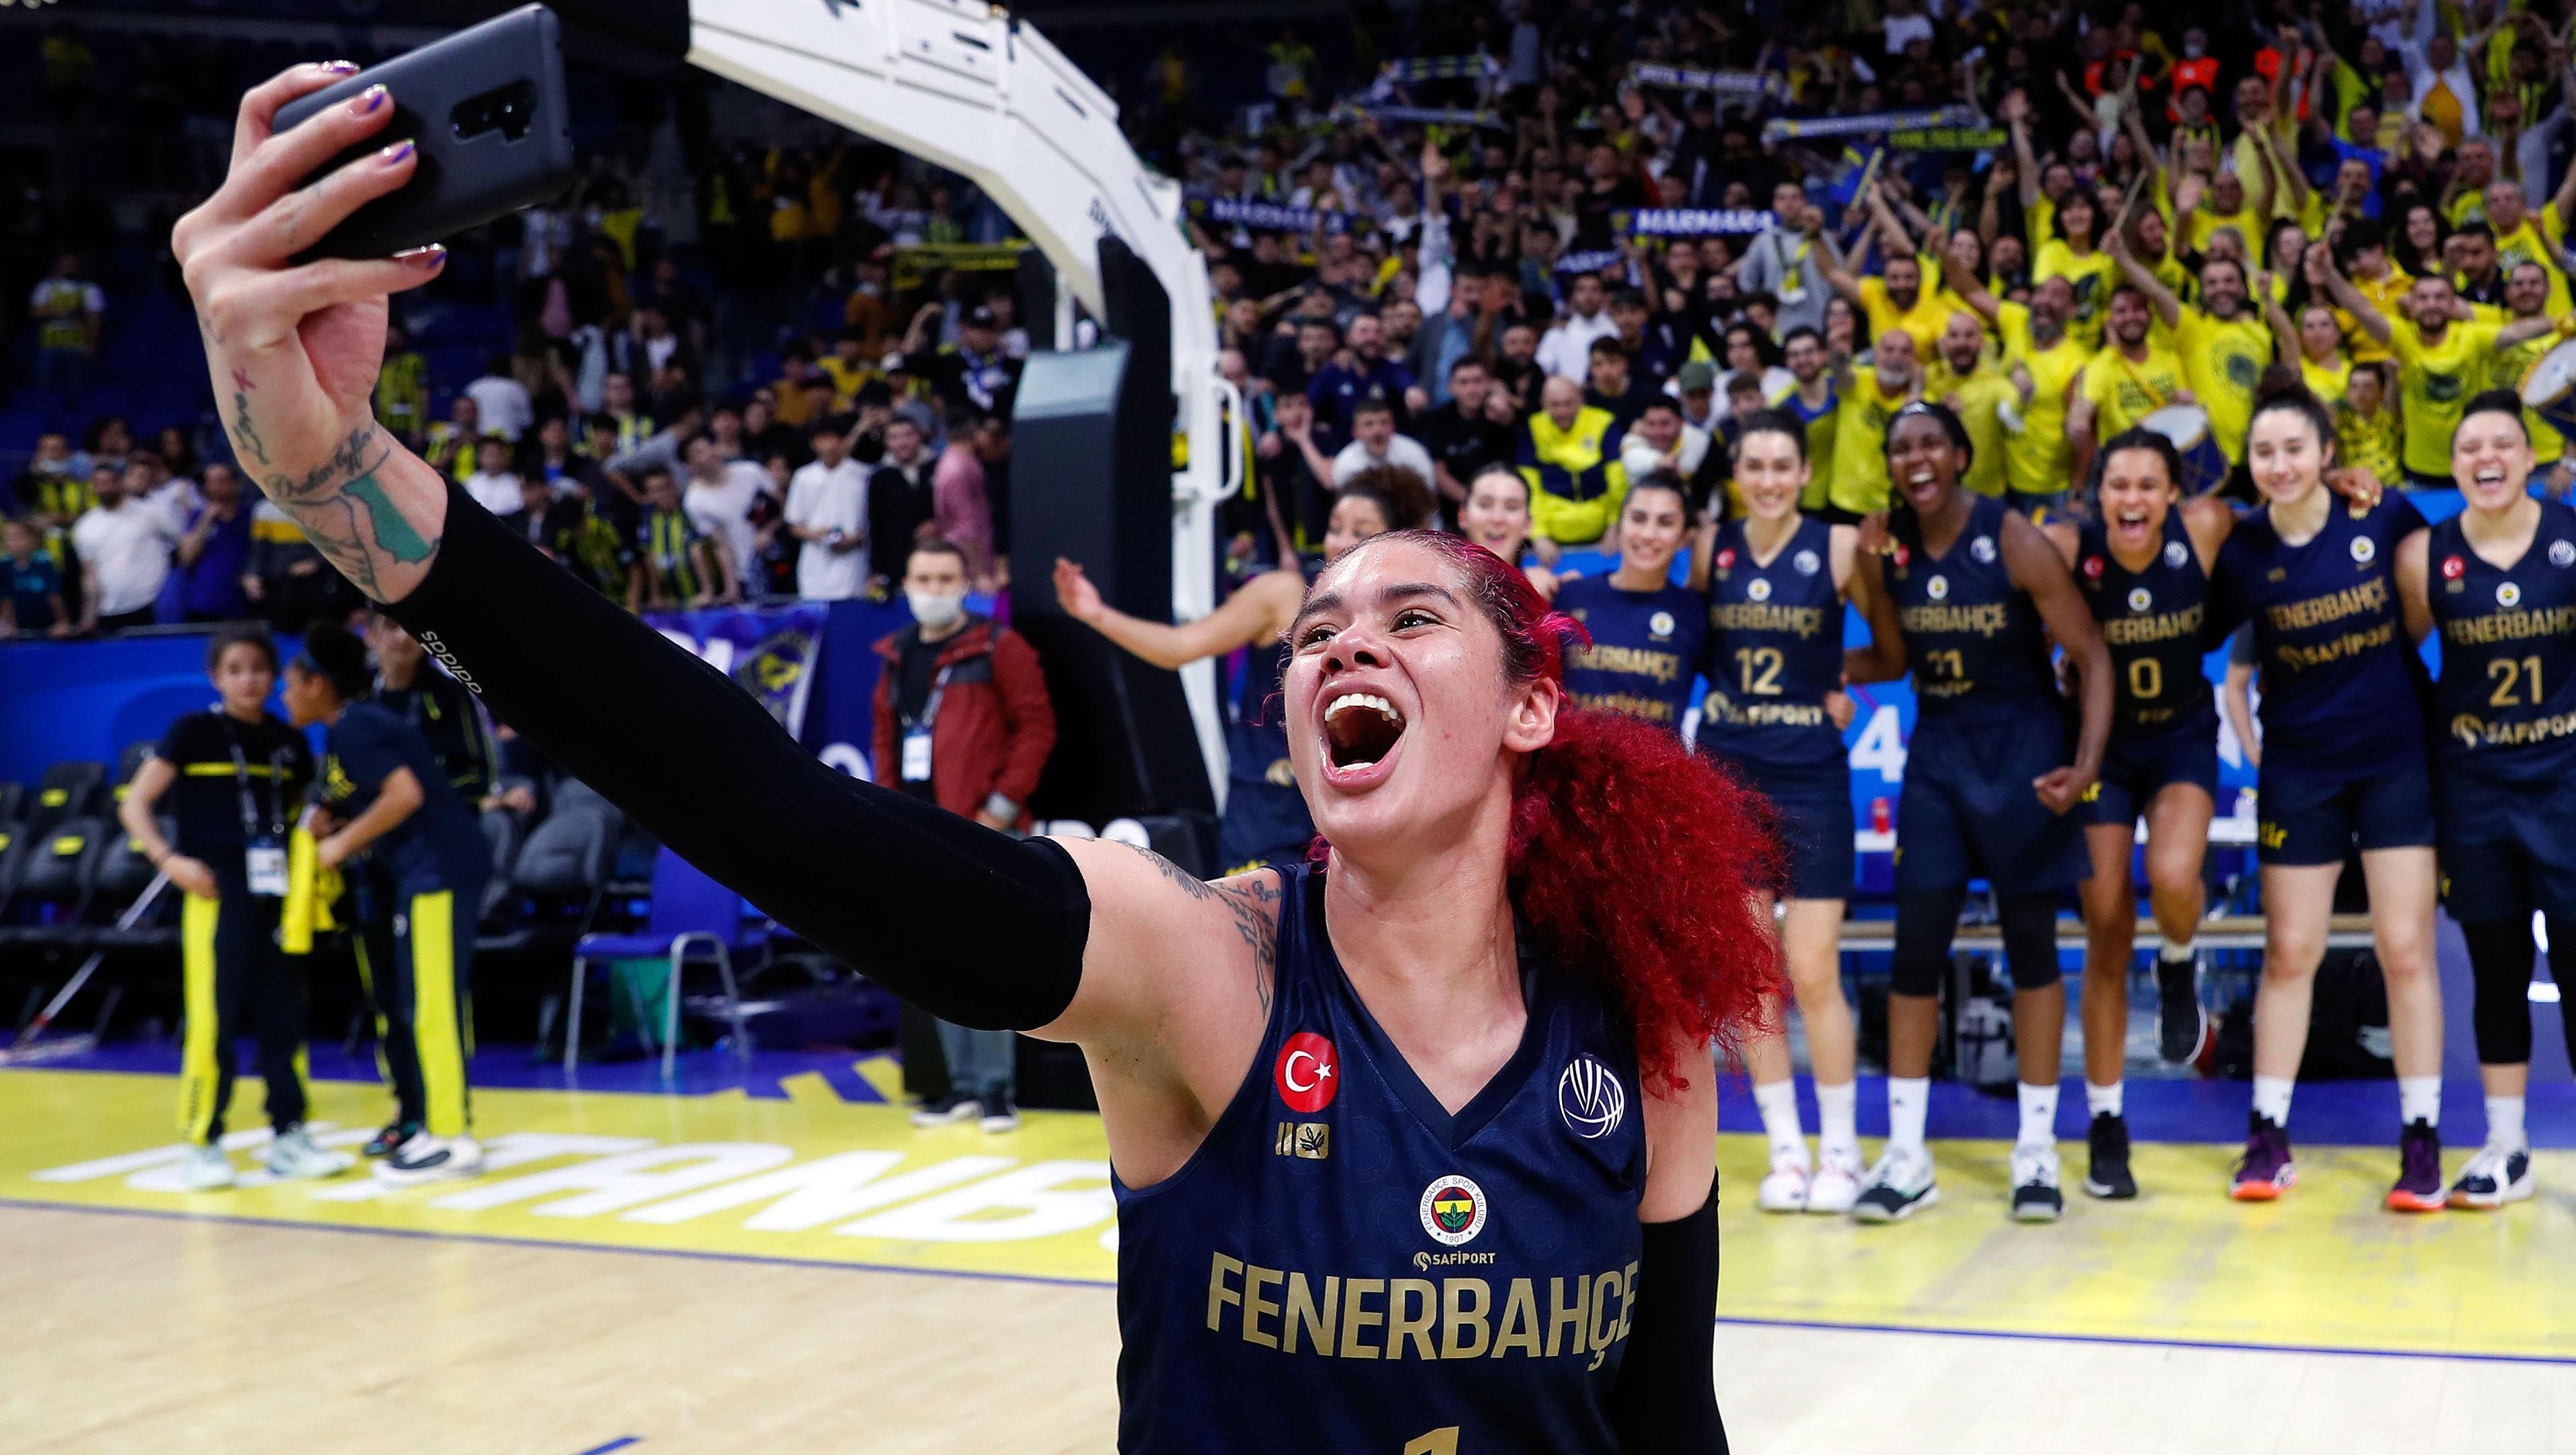 Fenerbahçe Safiportta Lapena ve Zahui, gözünü EuroLeague kupasına...